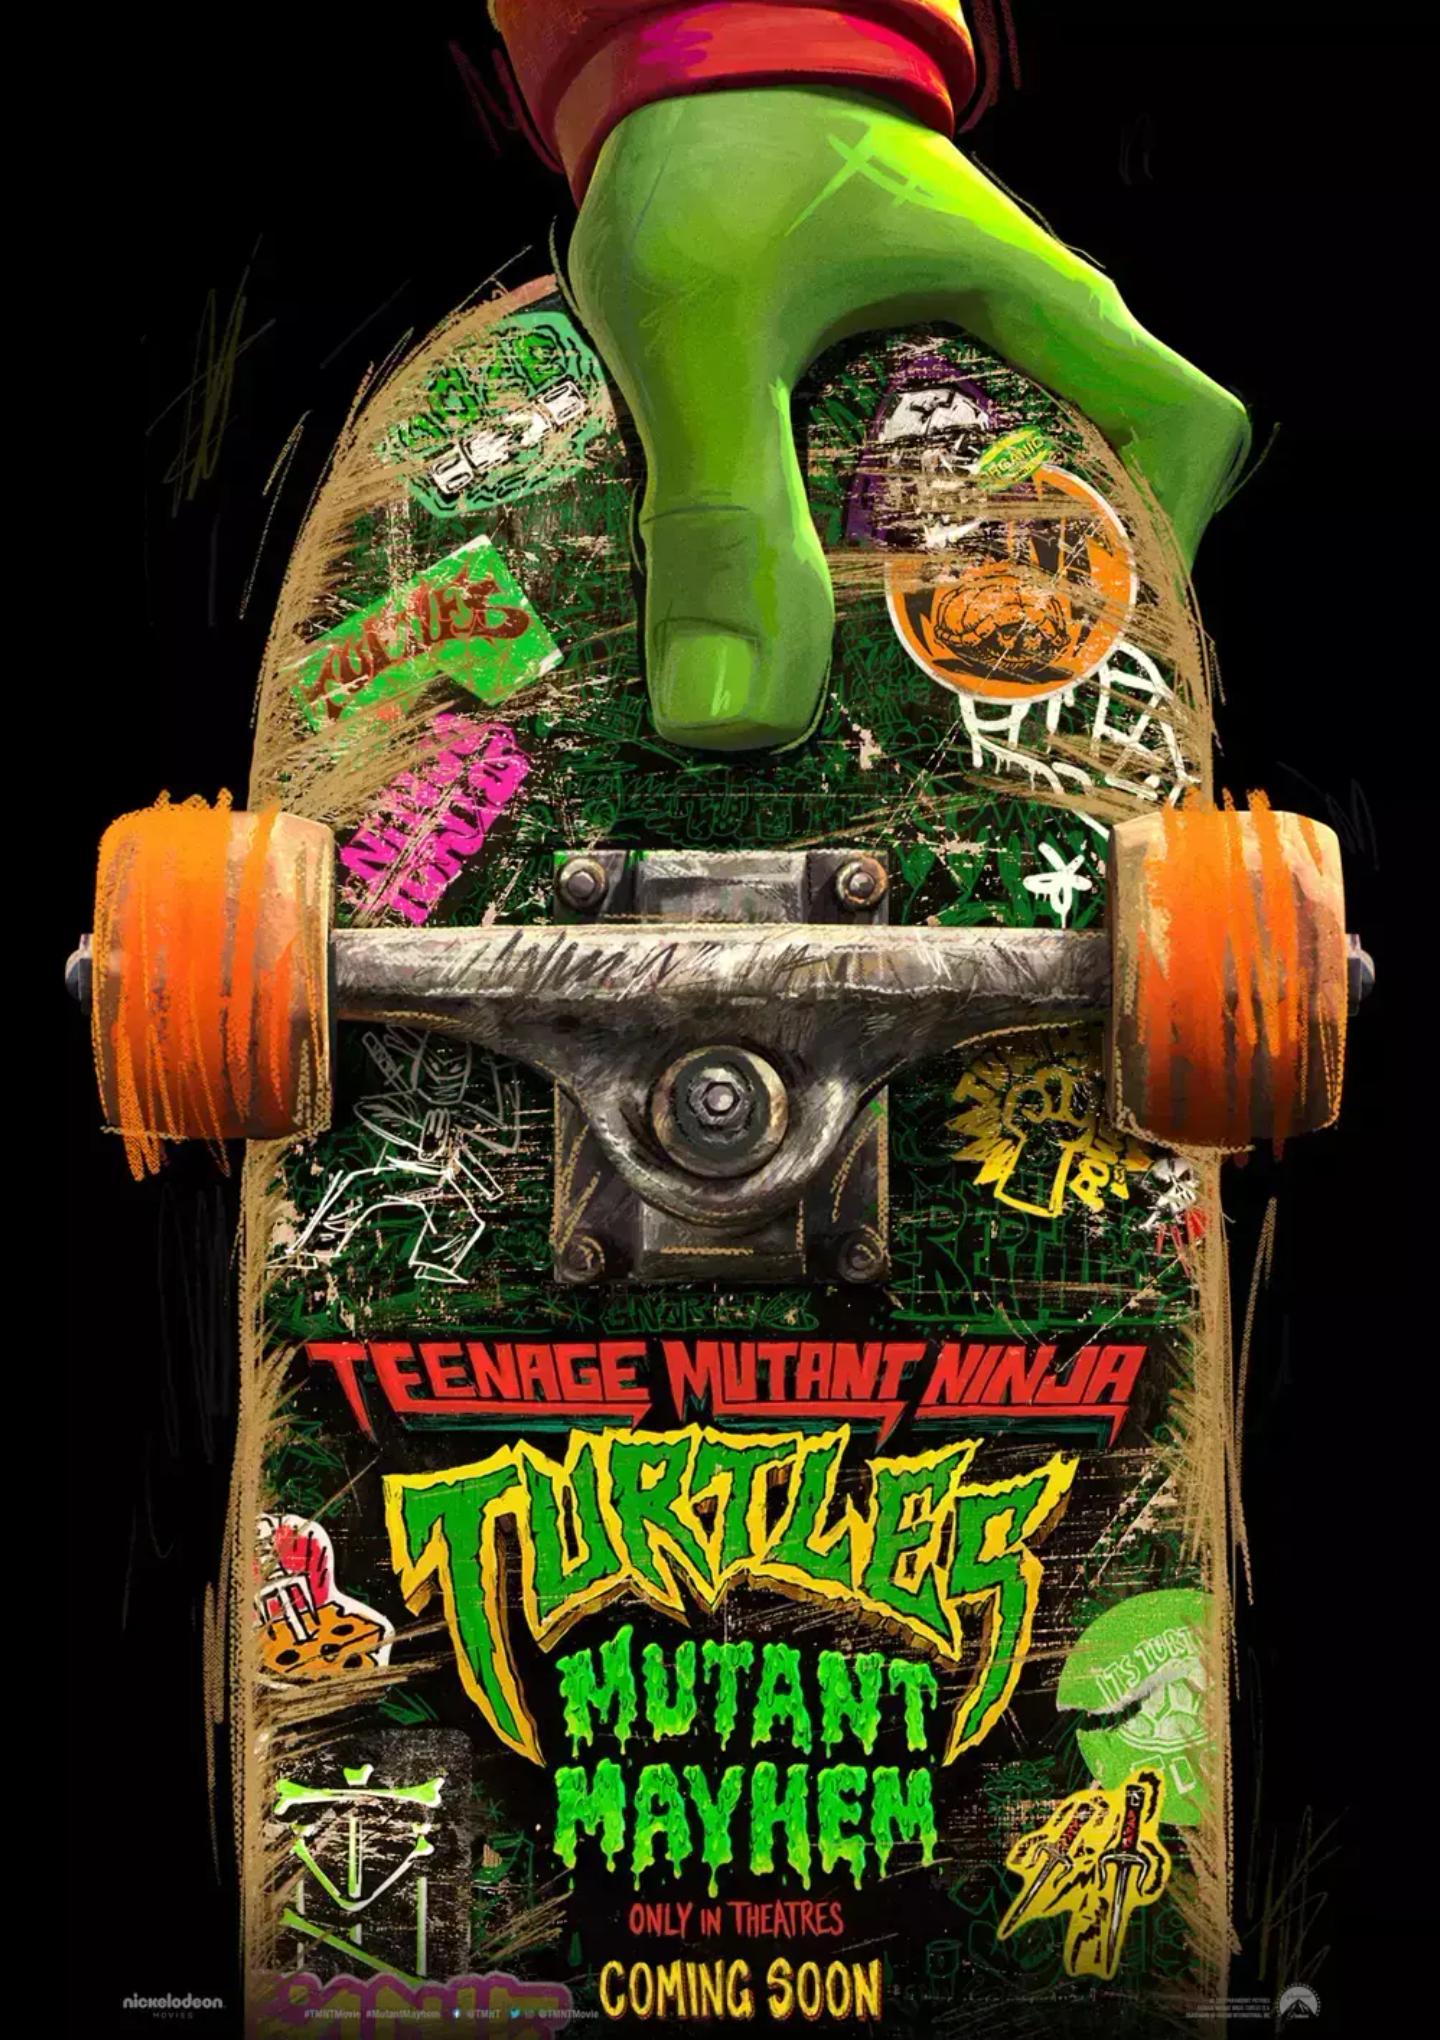 Plakat for 'Teenage Mutant Ninja Turtles: Mutant Mayhem'